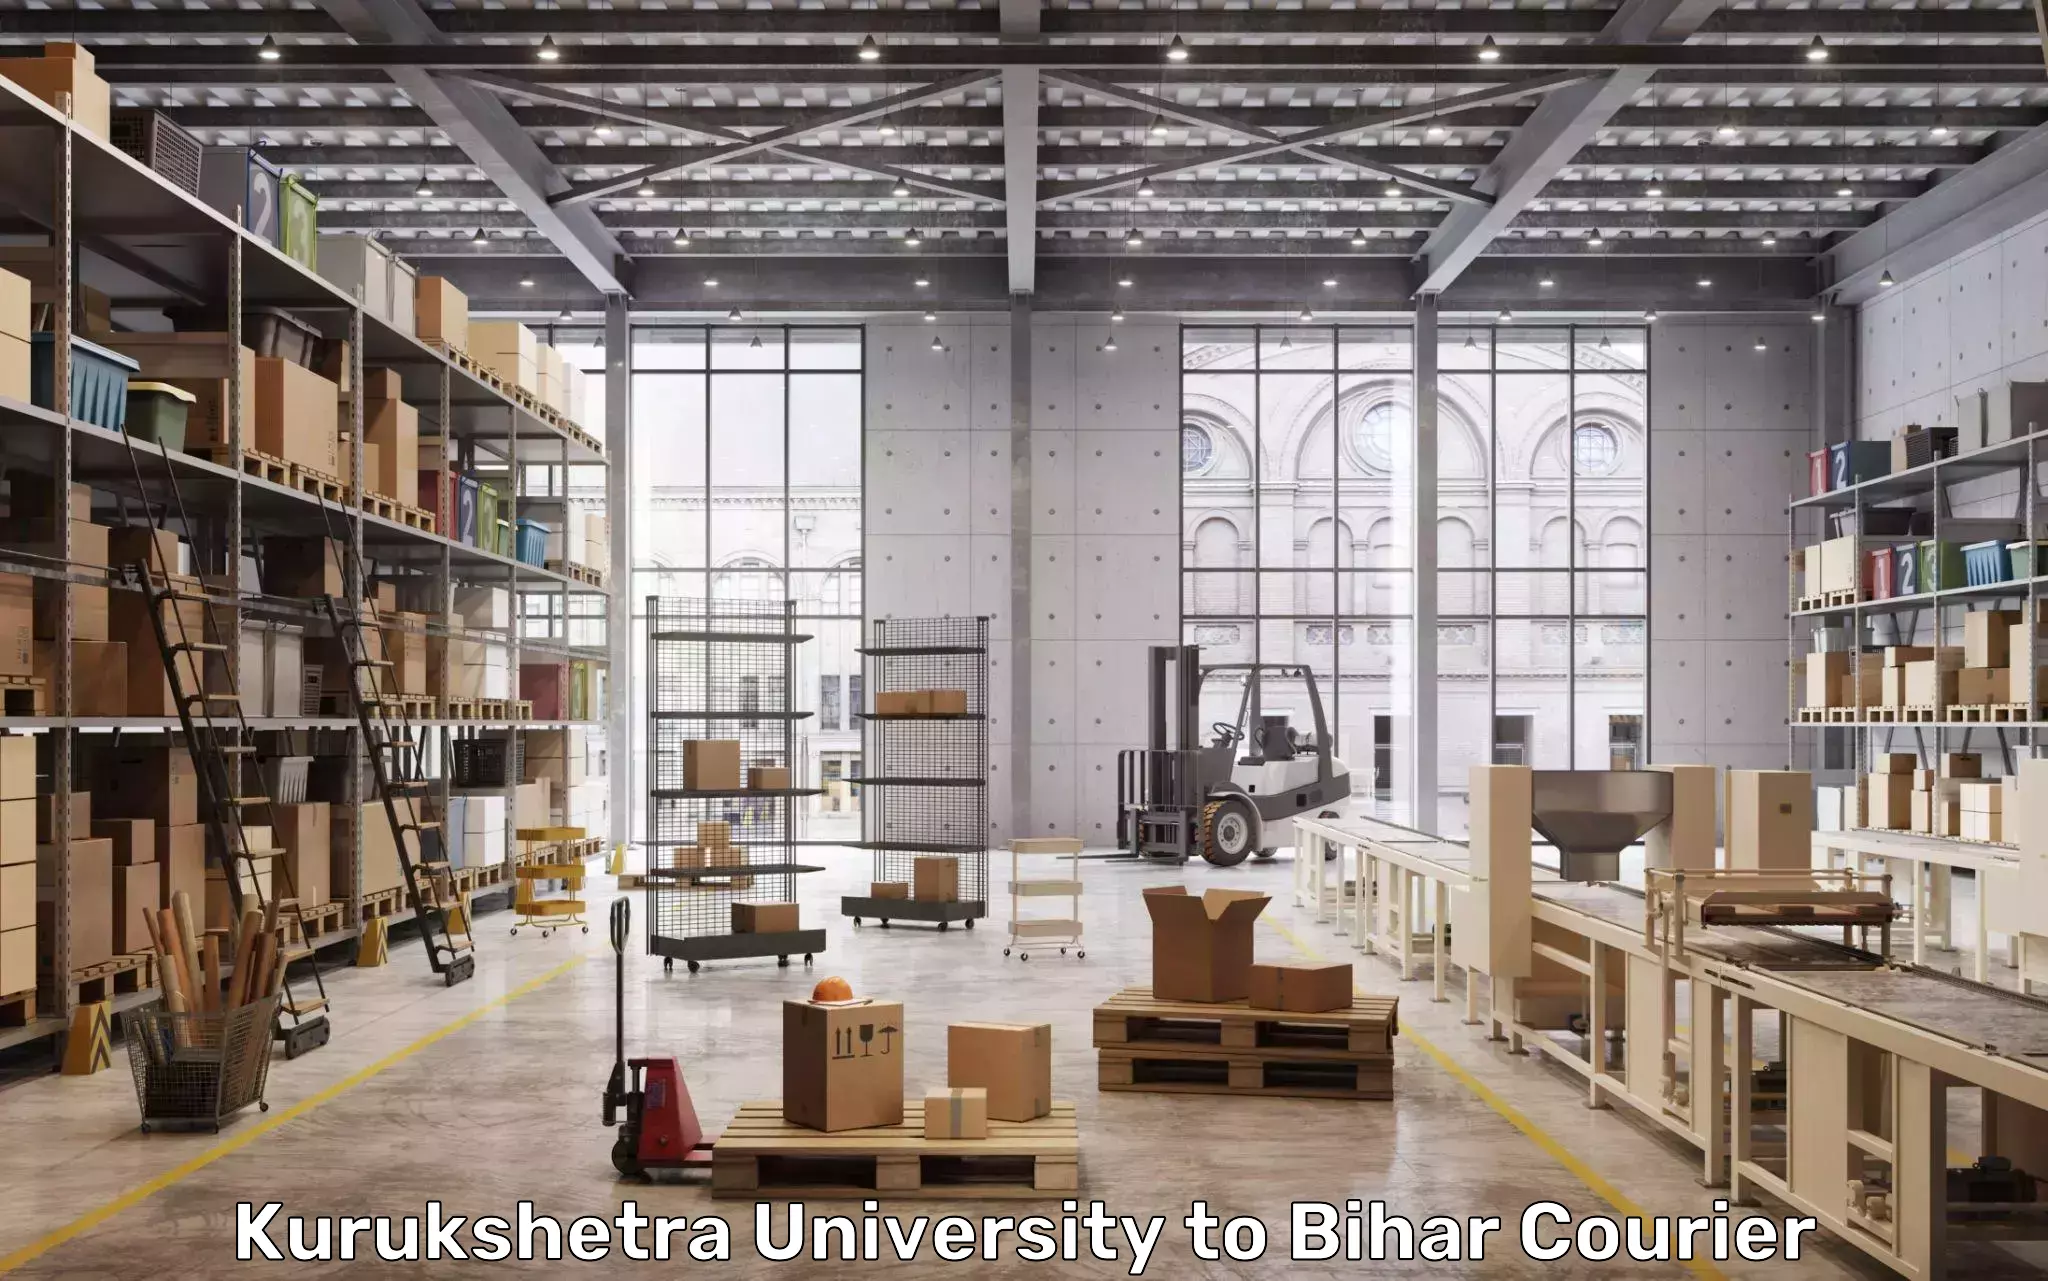 Baggage courier strategy Kurukshetra University to Bihar